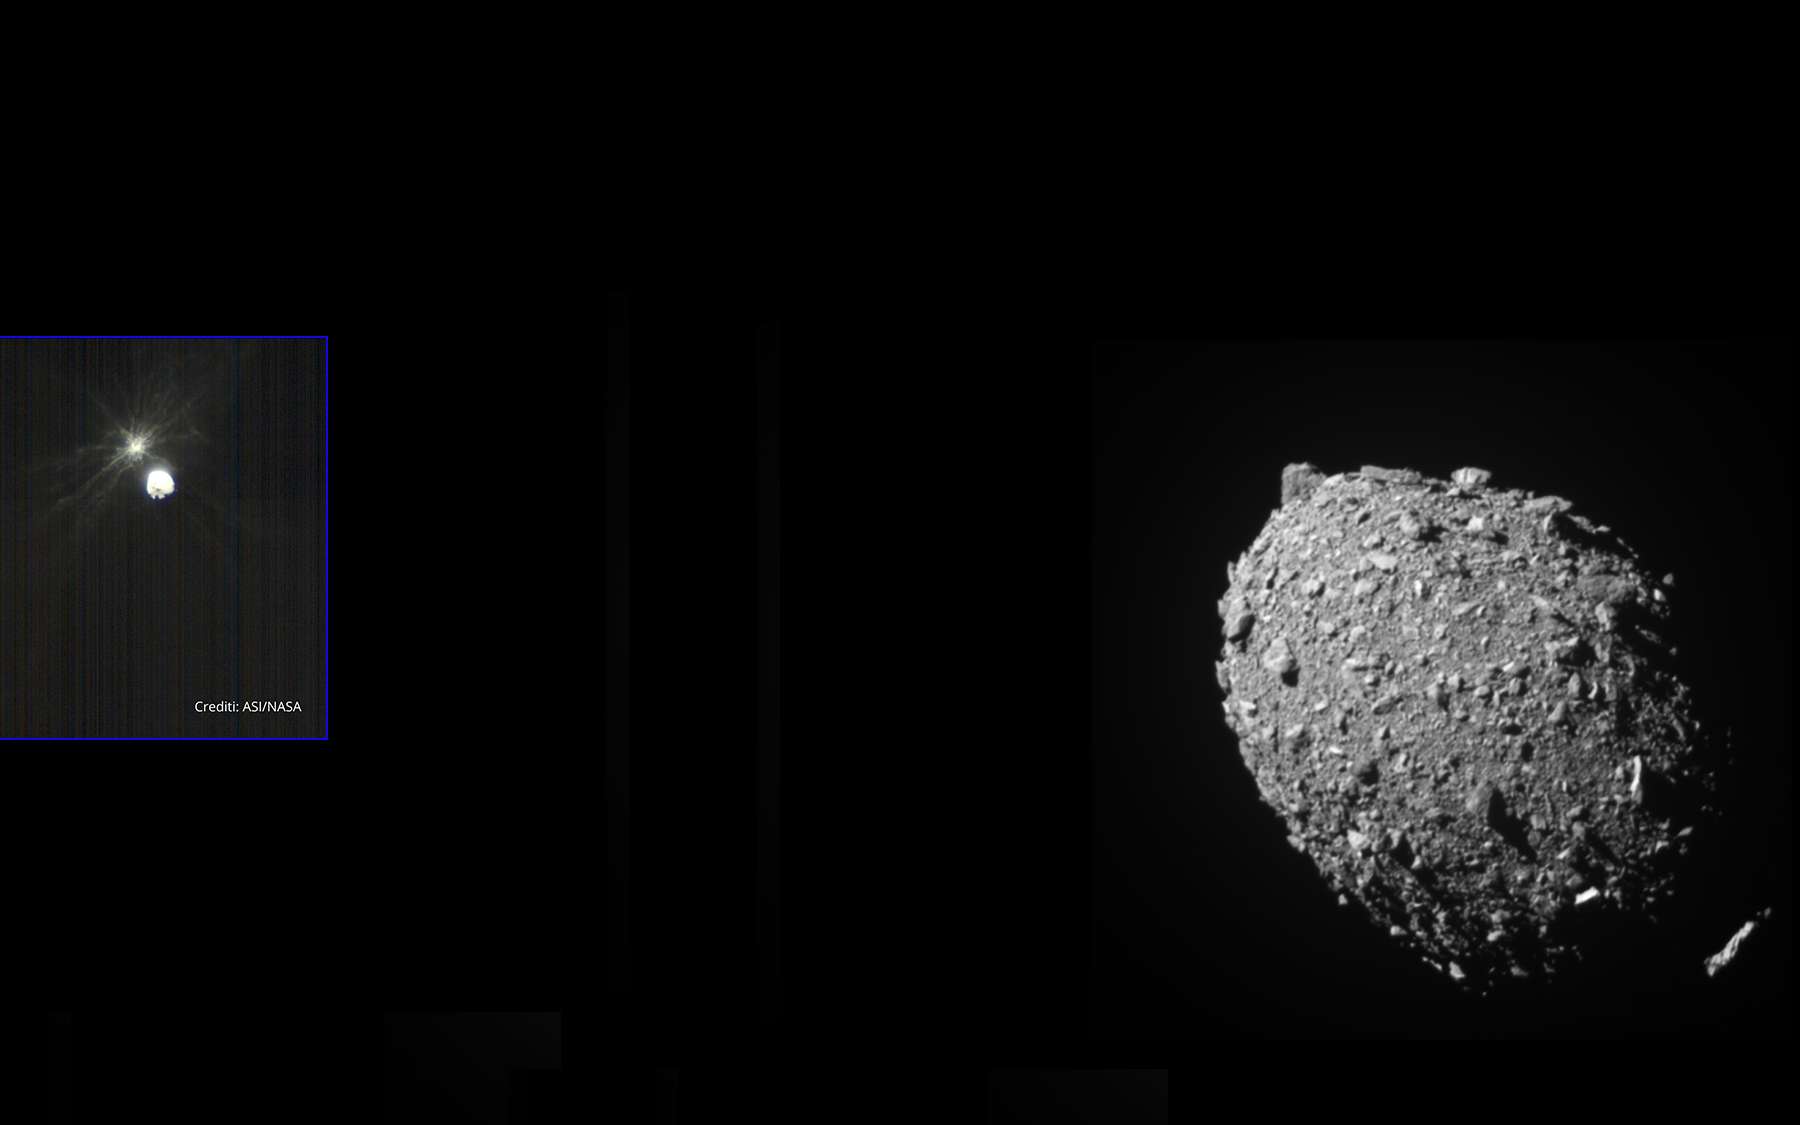 Regardez comment l’astéroïde réagit à la collision avec la sonde Dart